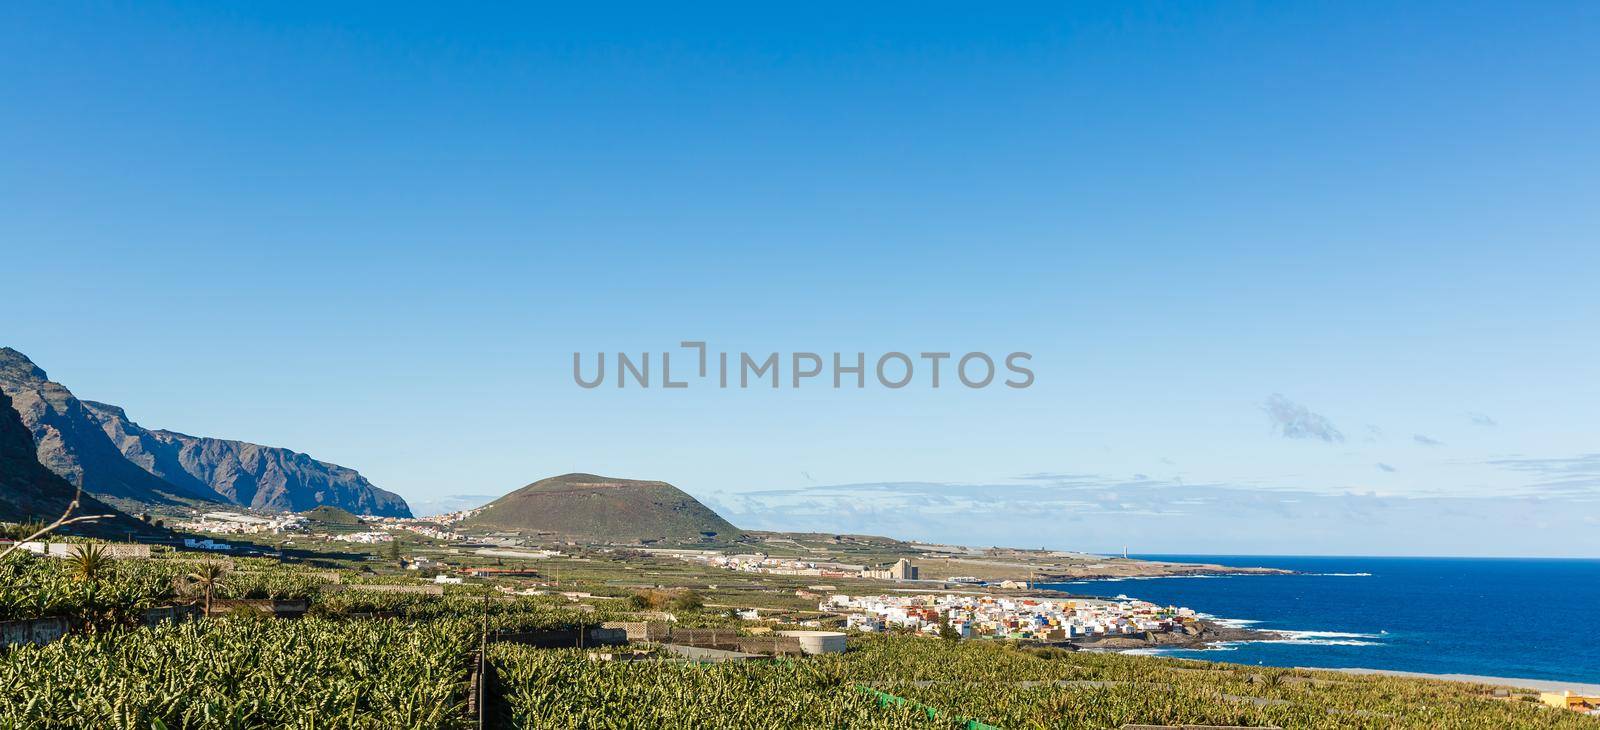 Aerial view of Garachico village on the coast of Atlantic ocean in Tenerife island of Spain by Andelov13